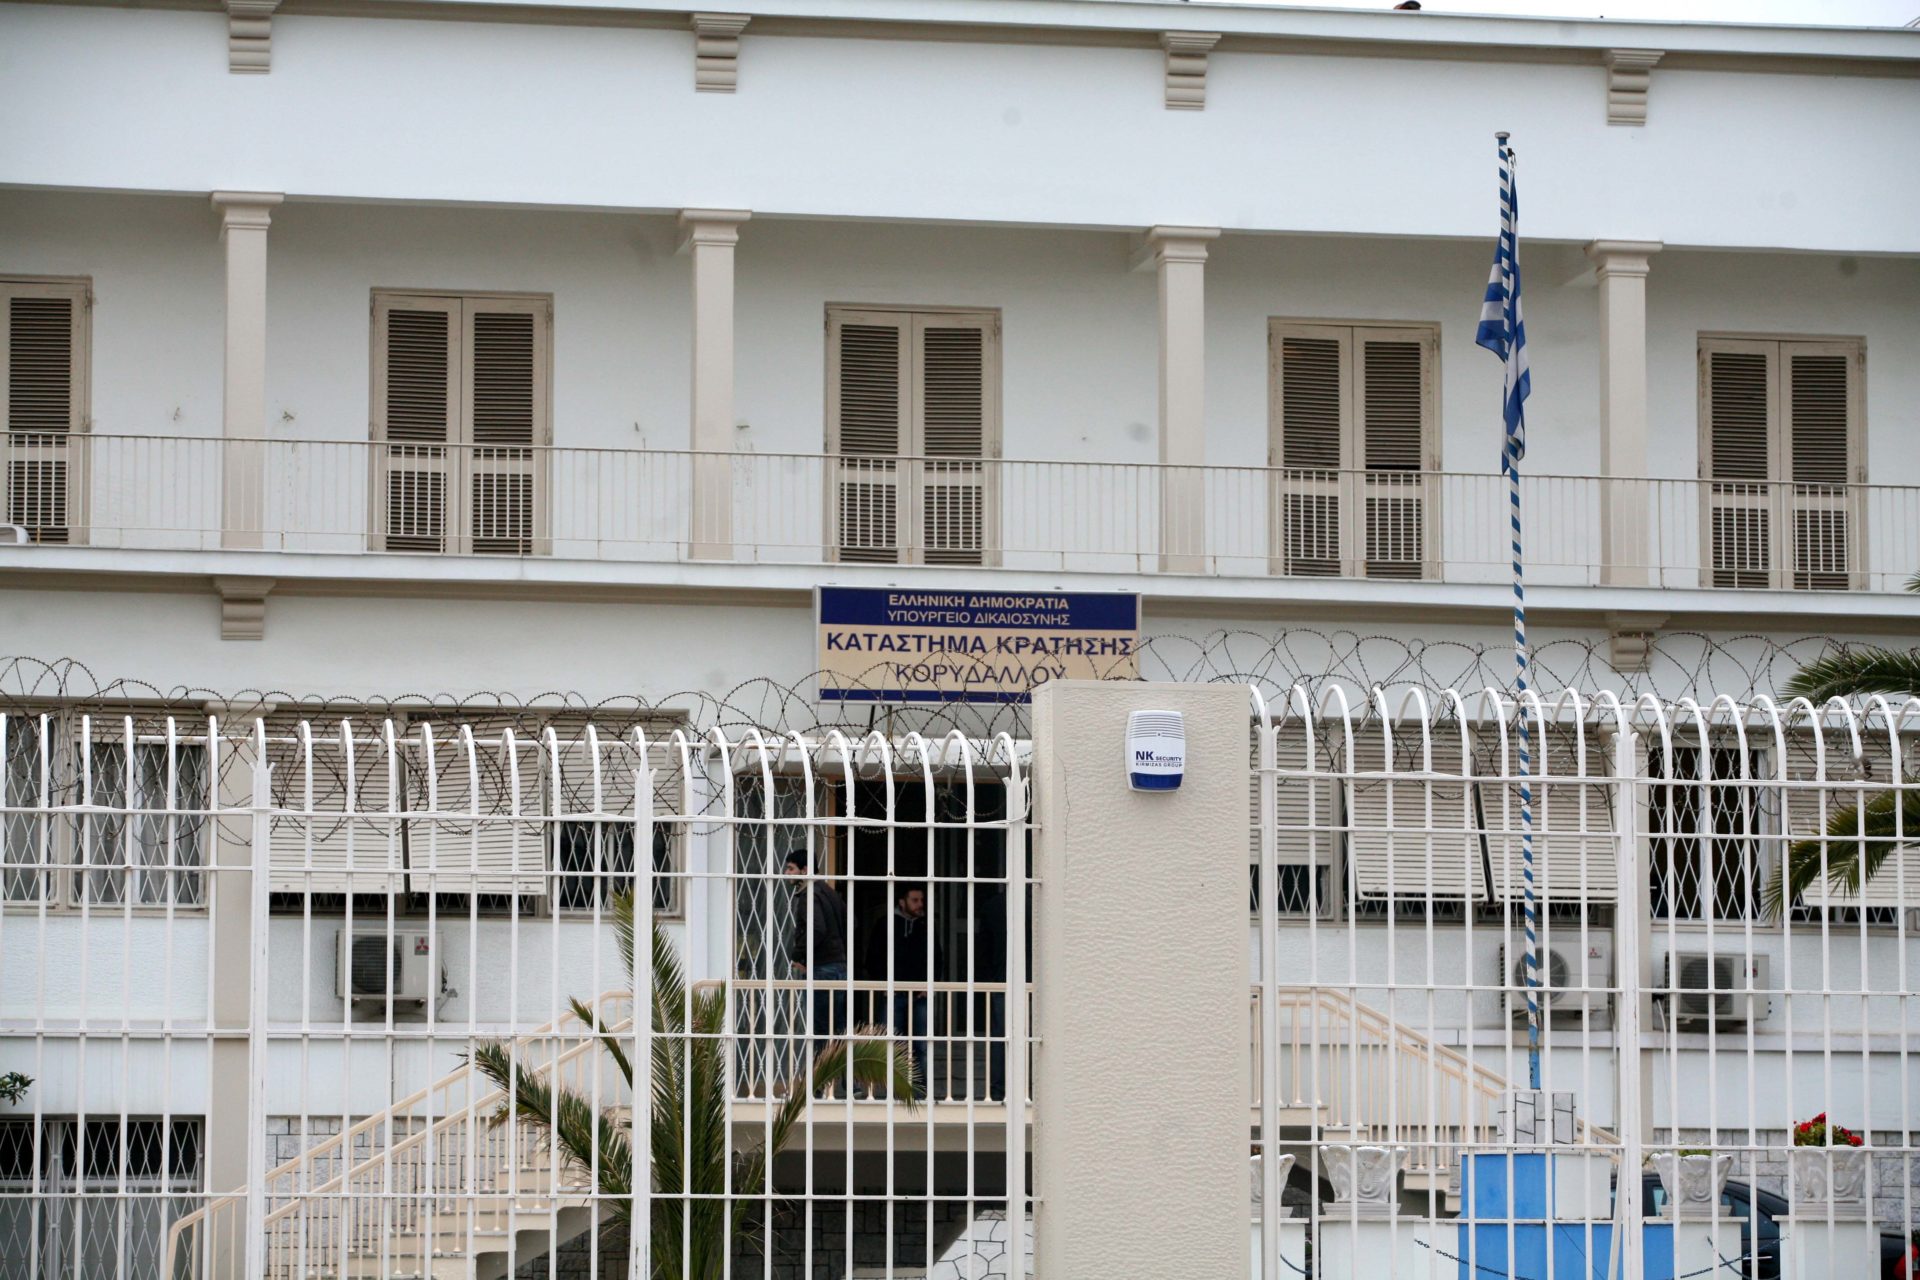 Ποιος είναι ο φρουρός που αυτοκτόνησε στις φυλακές Κορυδαλλού με το υπηρεσιακό του όπλο